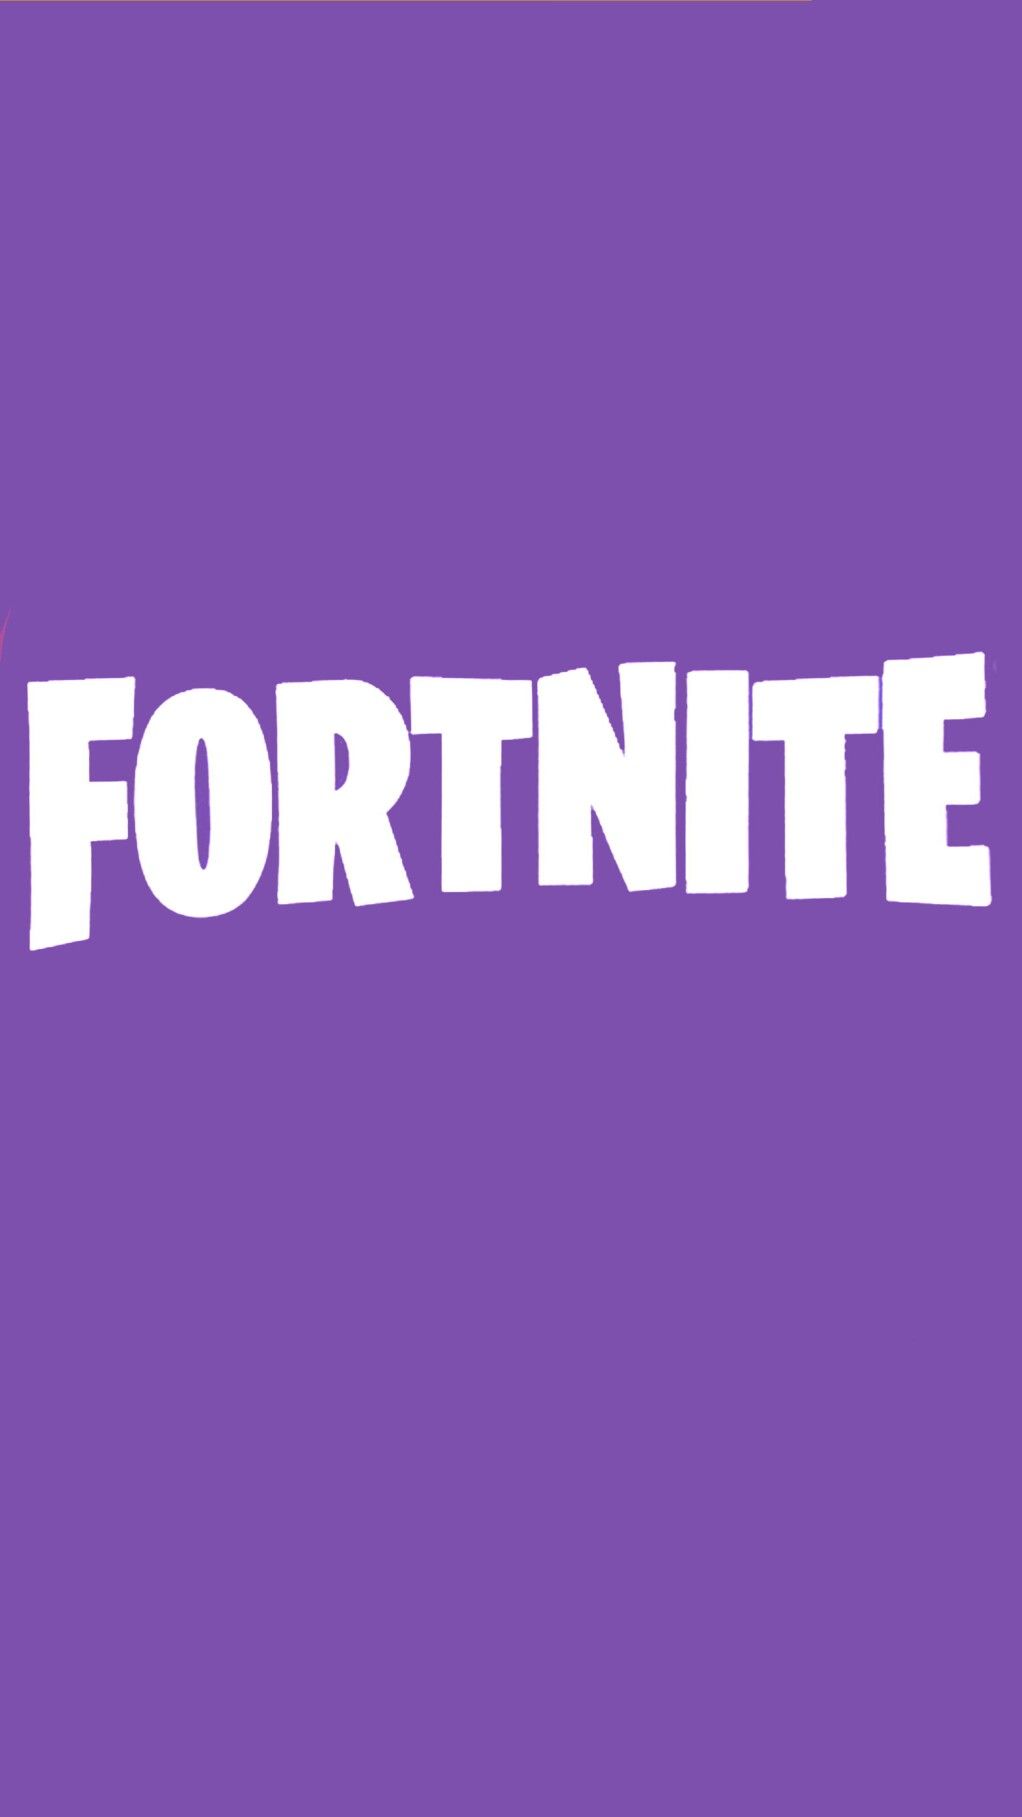 Fortnite Logo Wallpaper. Purple aesthetic, Fortnite, Purple wallpaper